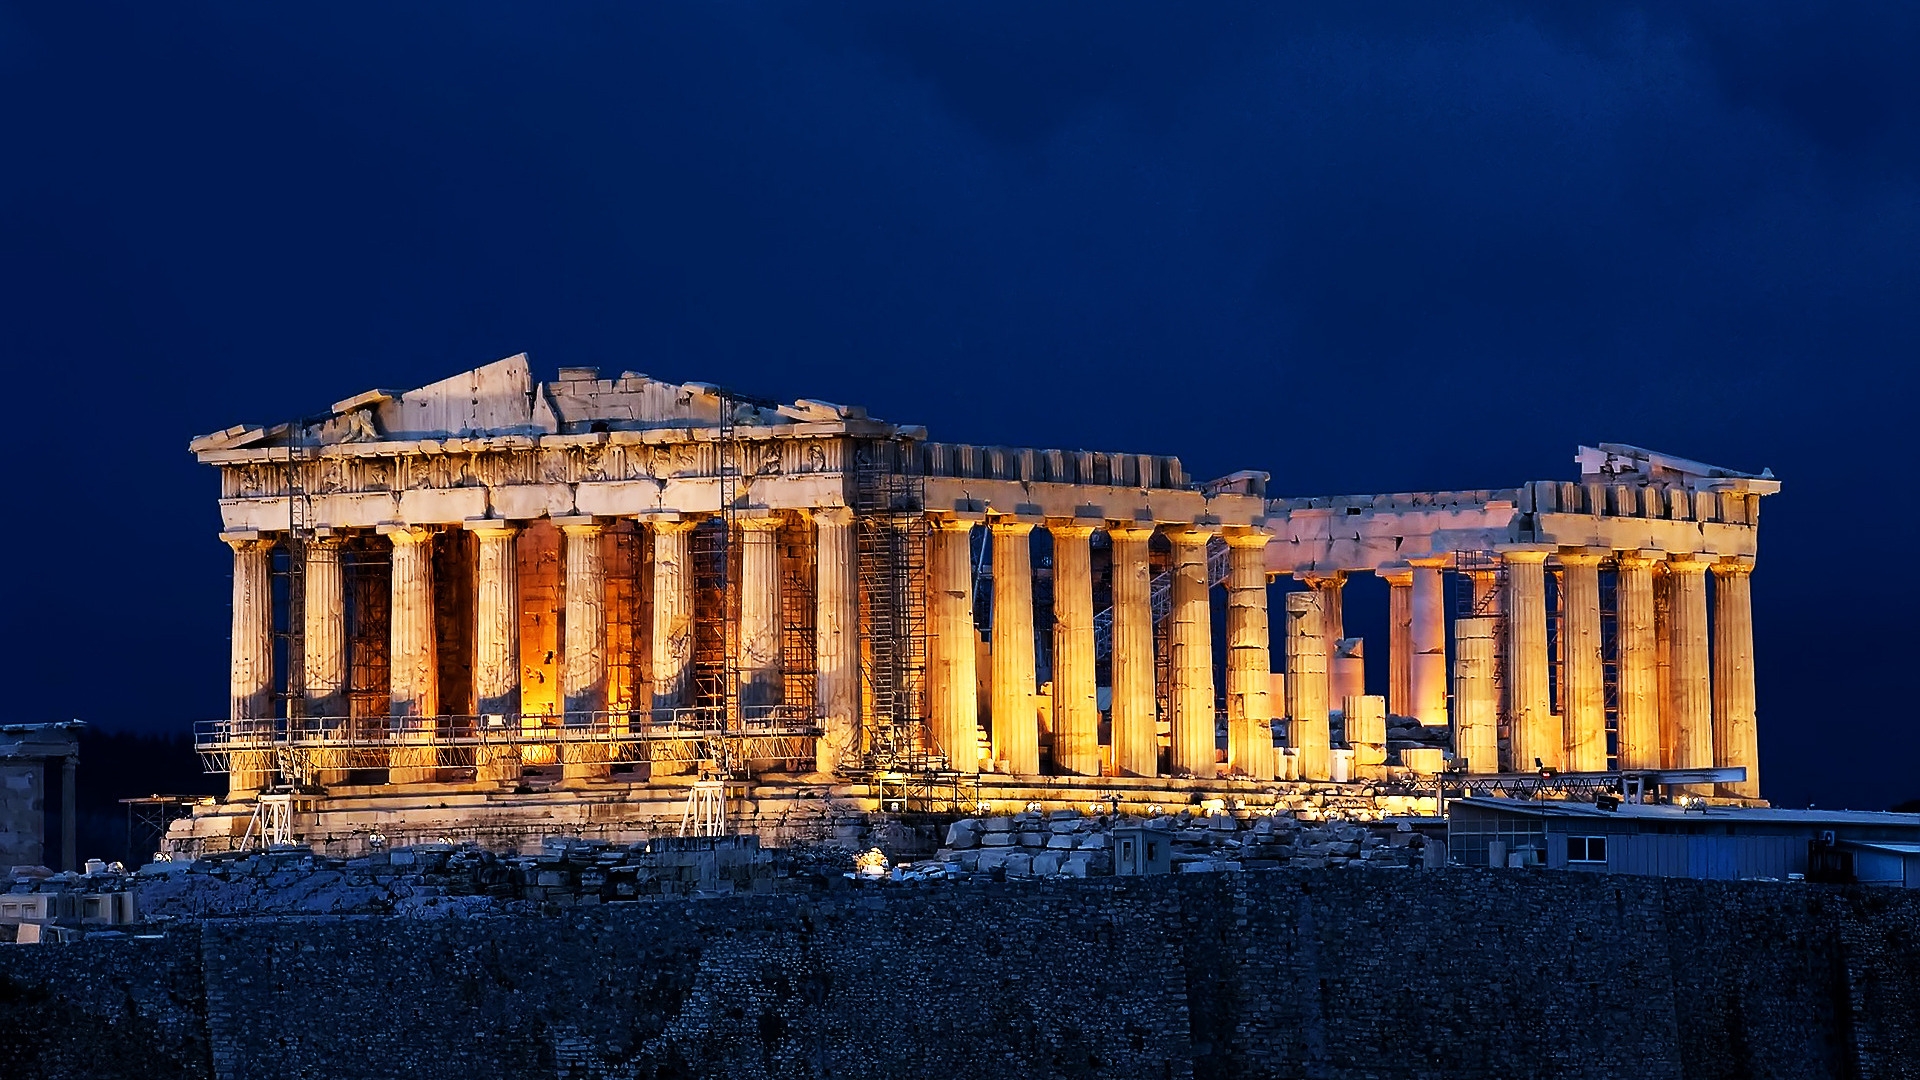 Parthenon Acropolis Athens for 1920 x 1080 HDTV 1080p resolution